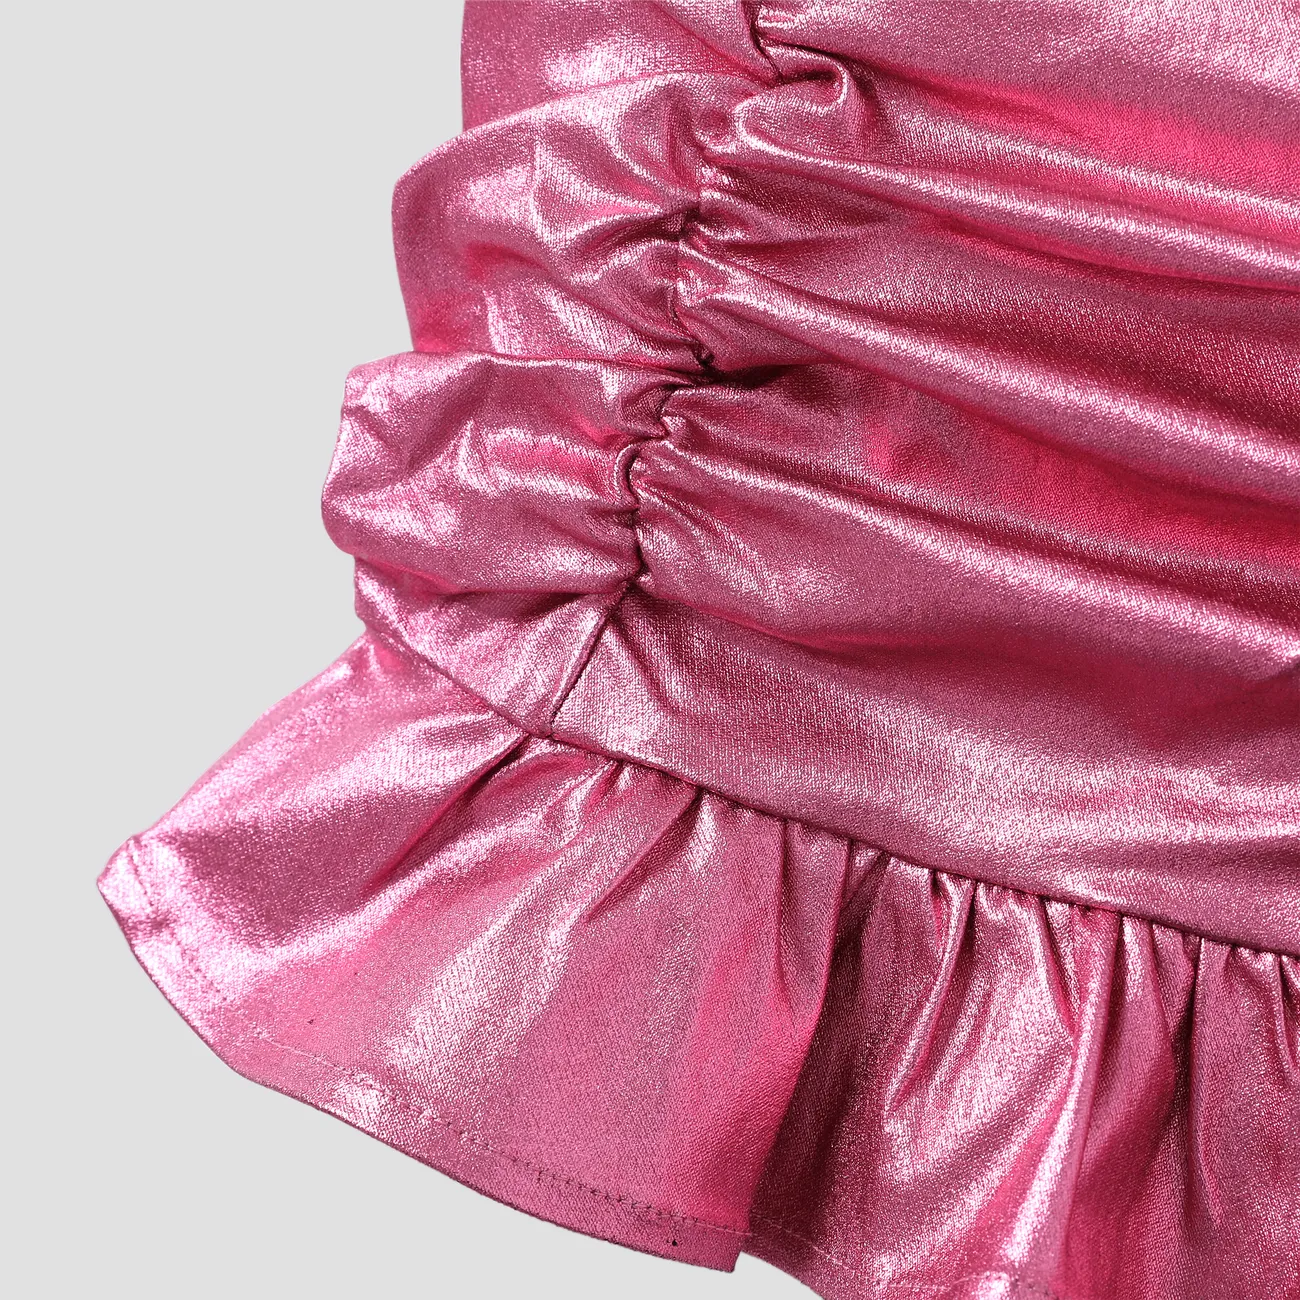 Barbie 2pcs Toddler/Kids Girls Alphabet Twist Tank Top with Pencil Skirt Set
 PinkyWhite big image 1